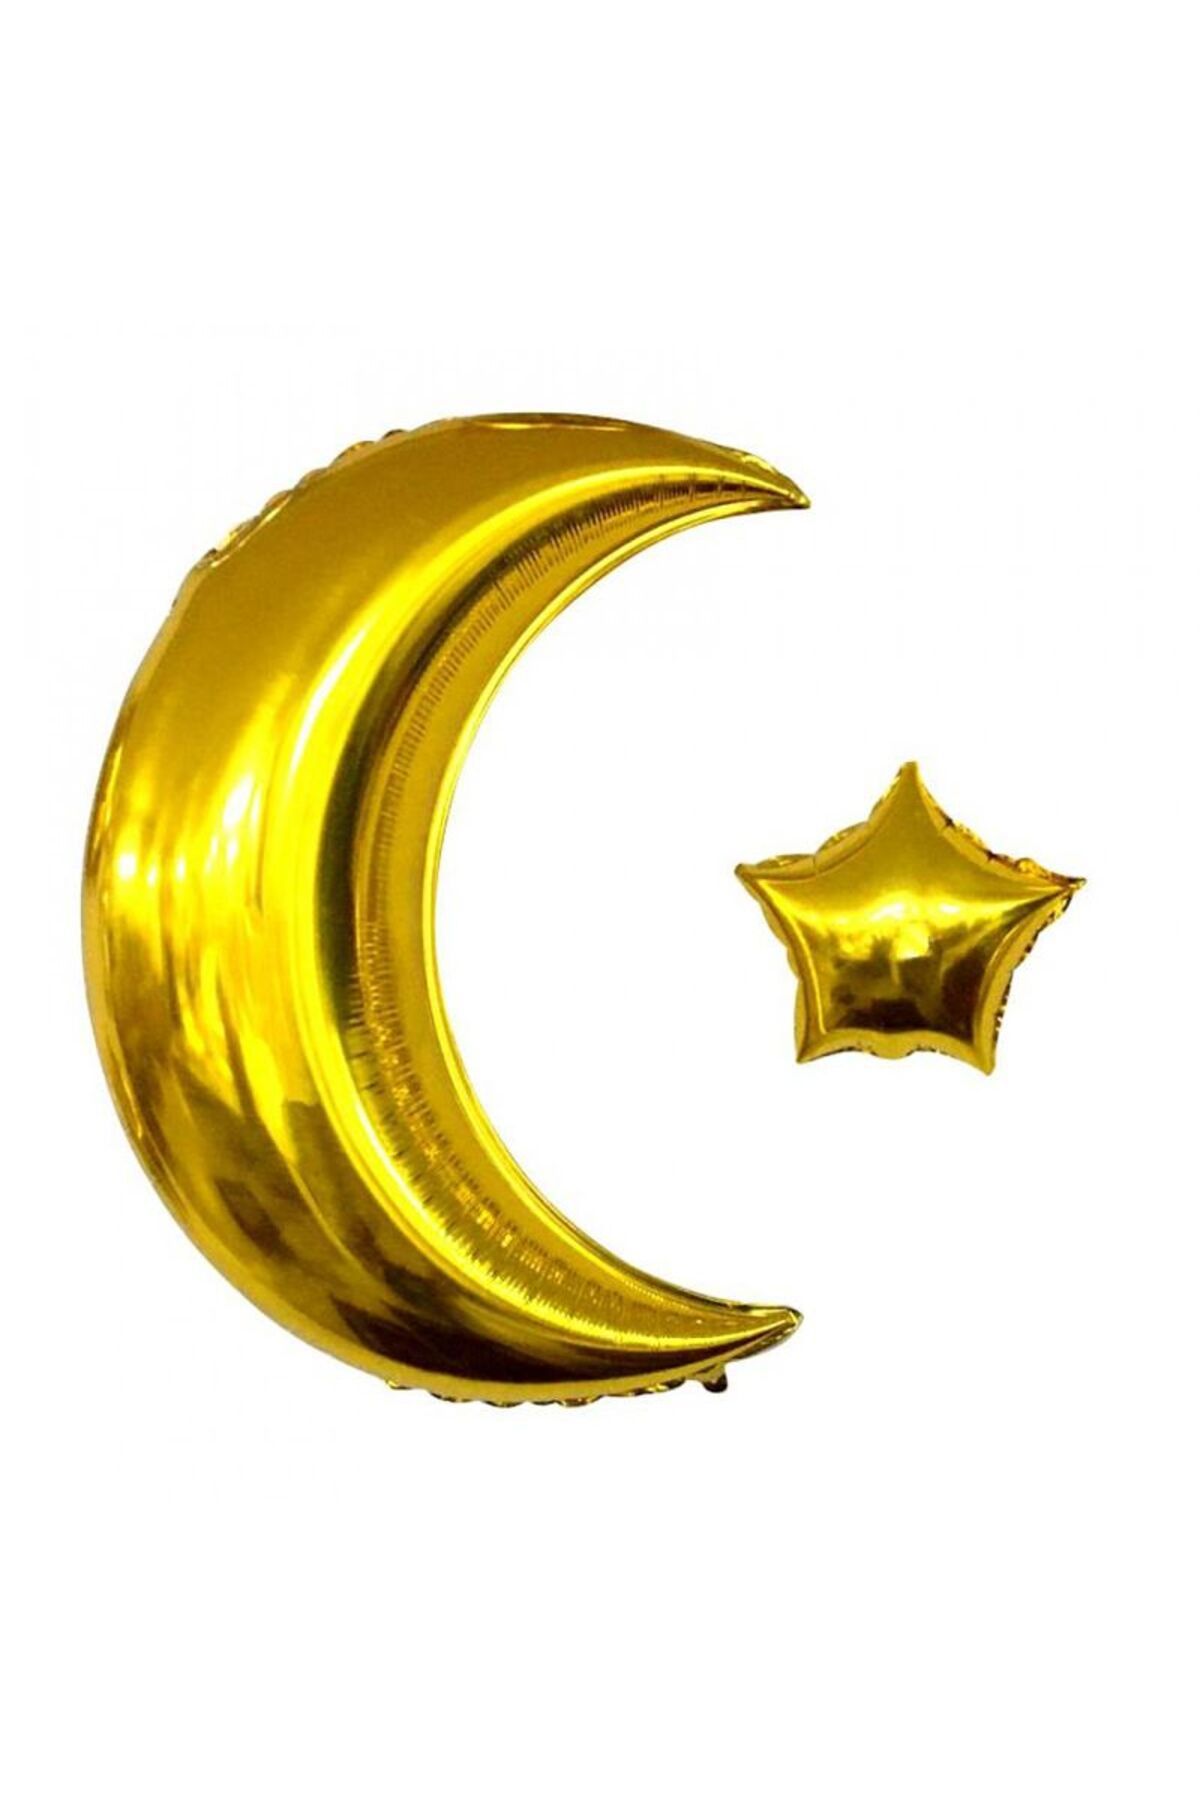 partidolu Ramazan Hilal Ay Ve Yıldız Şeklinde Ay Yıldız Altın Renk Folyo Balon 57 Cm